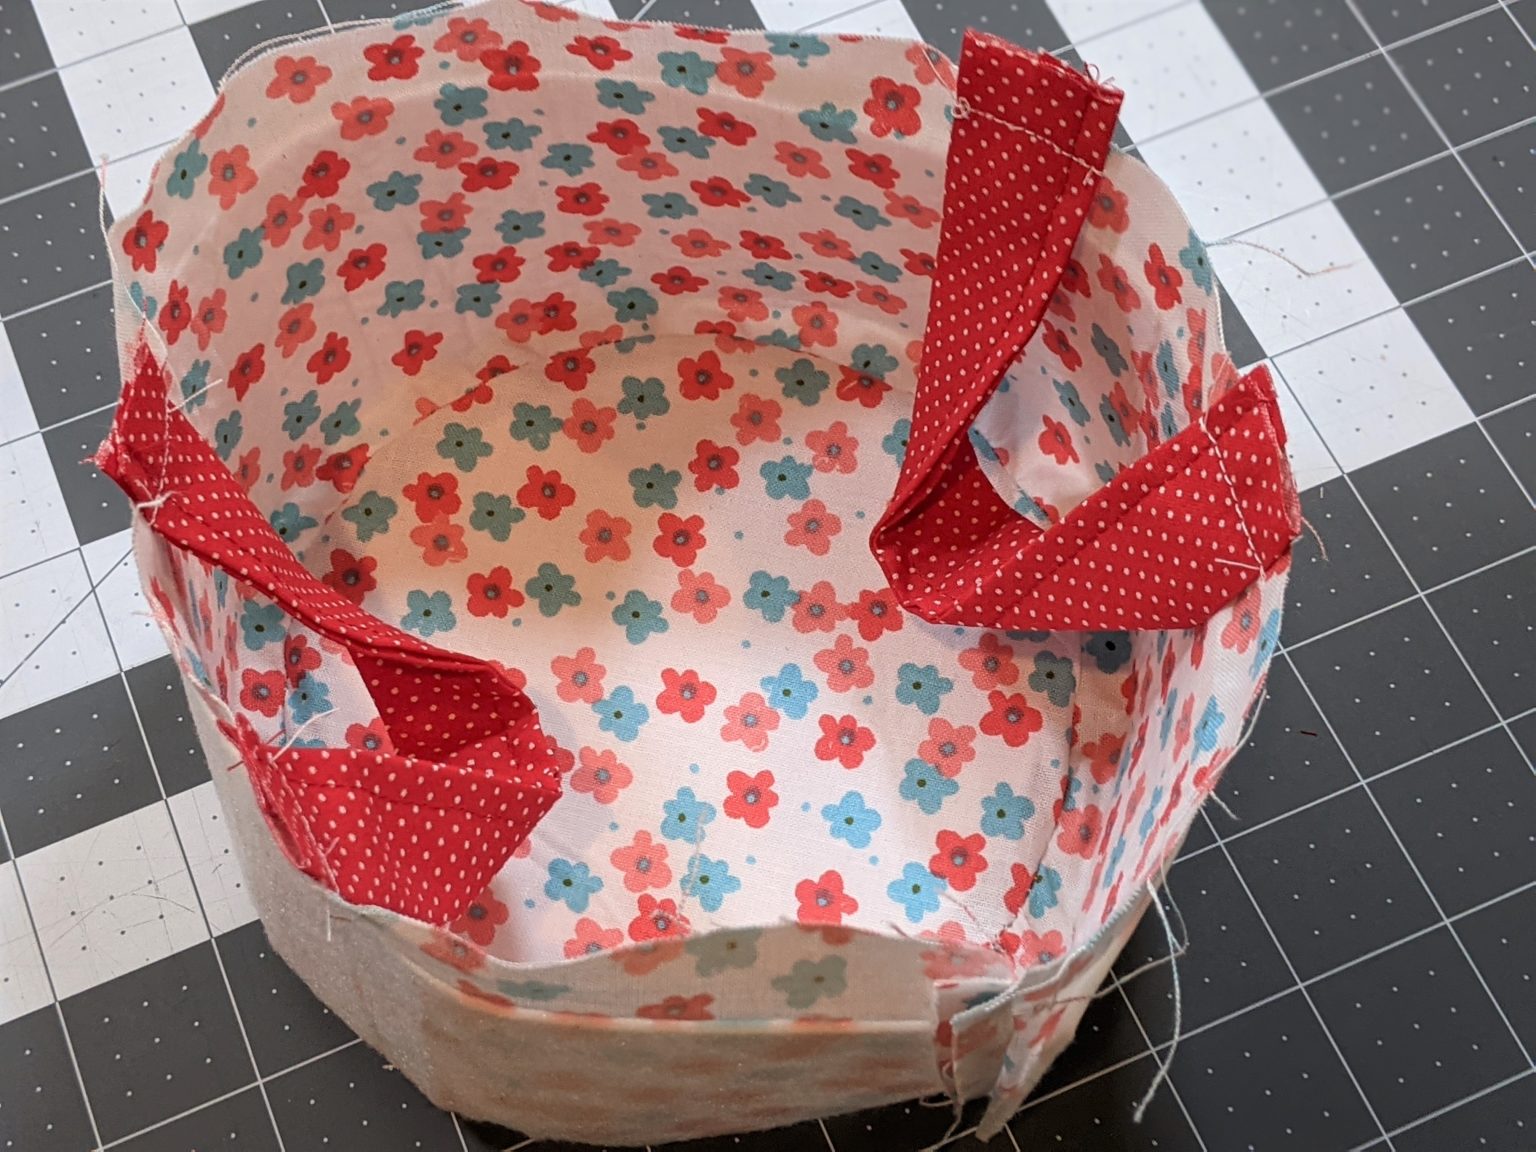 Circle Storage Basket - 5 out of 4 Patterns